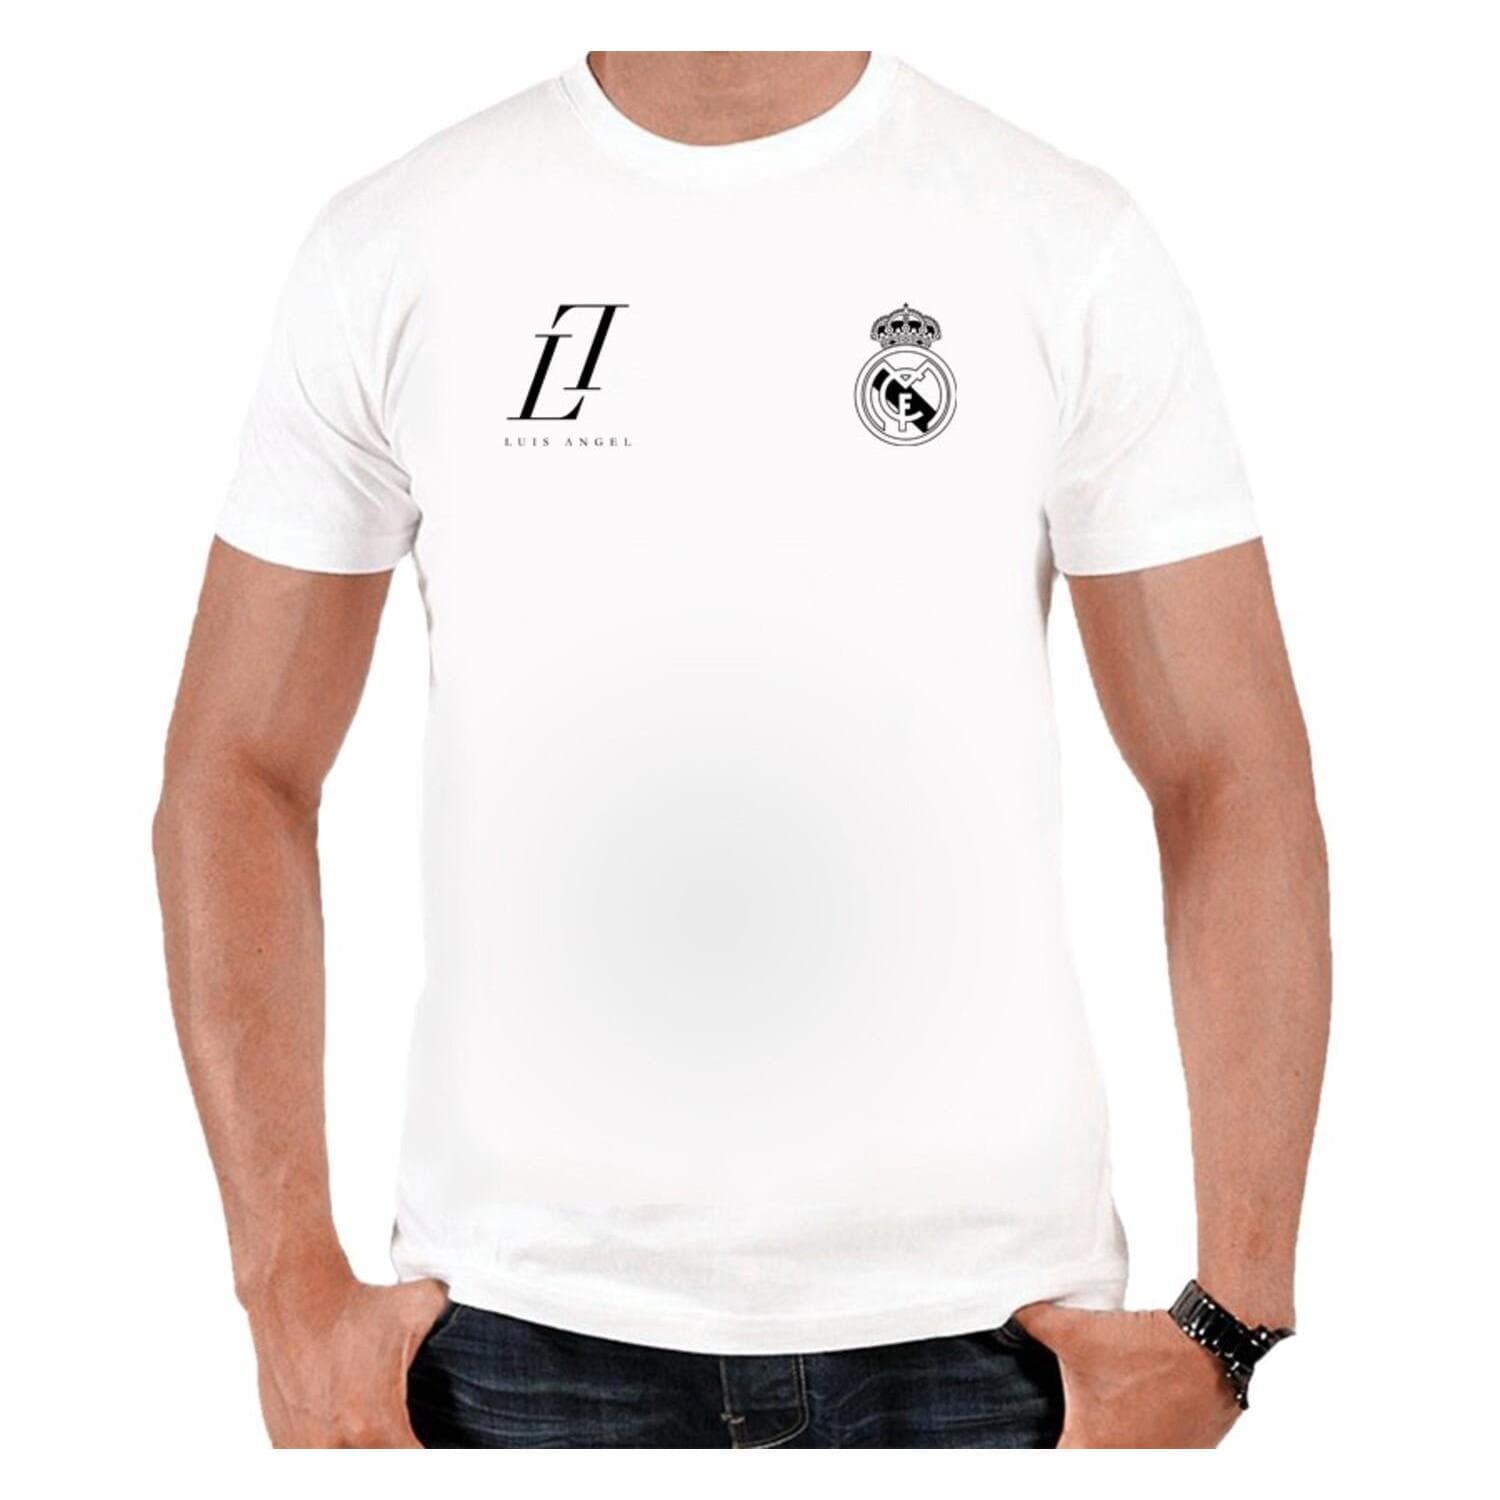 Tshirt Real Madrid